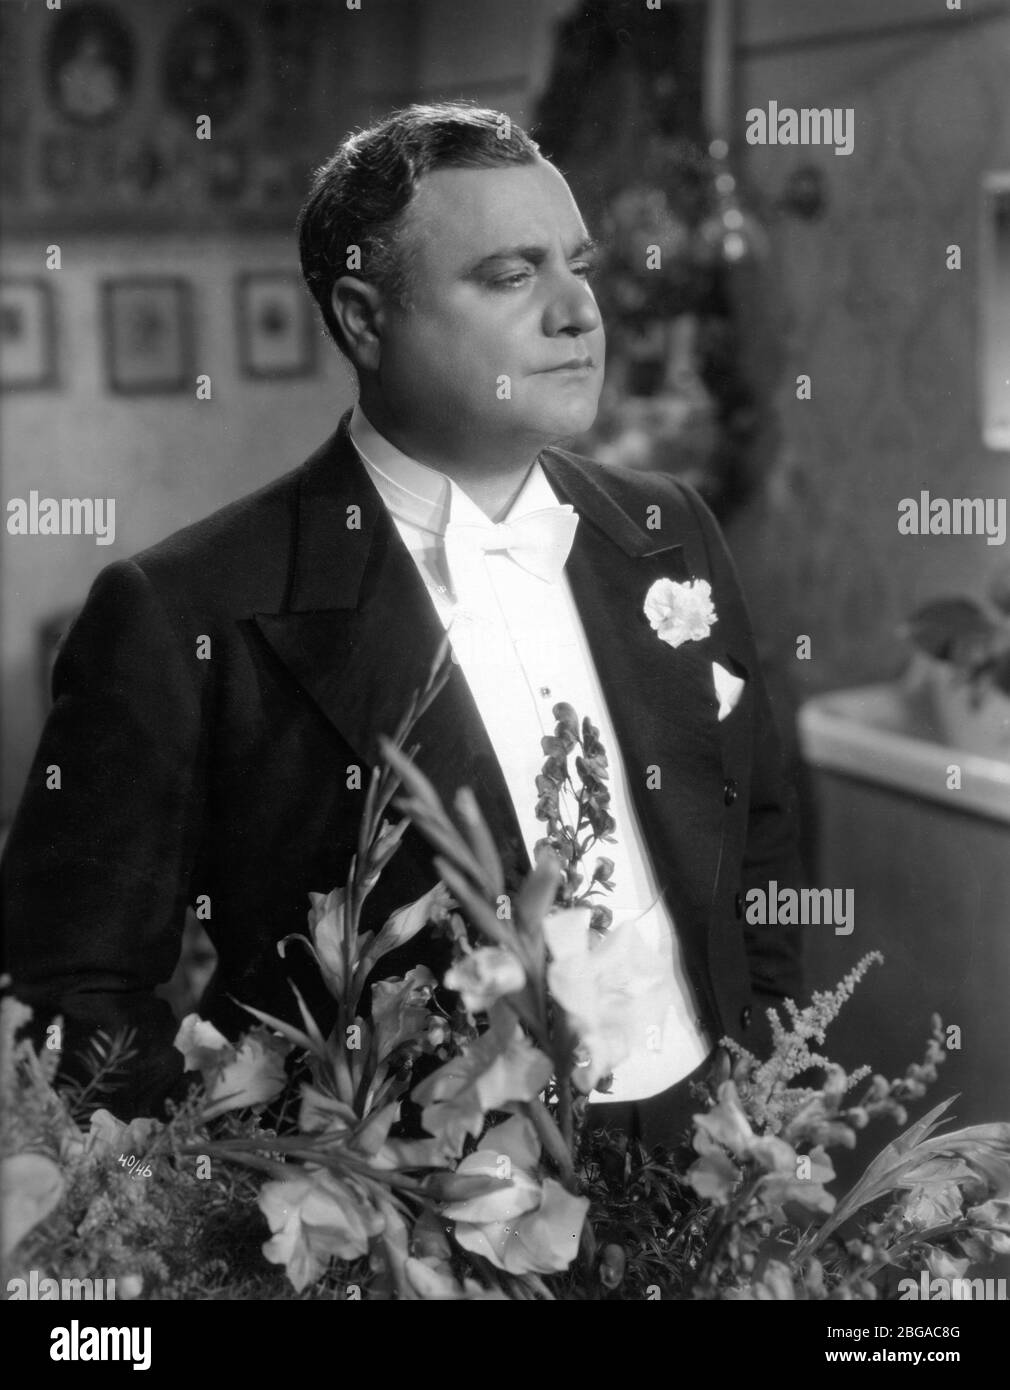 BENIAMINO GIGLI in DU BIST MEIN GLUCK / THOU ART MY JOY 1936 director KARL HEINZ MARTIN Bavaria Film / Bayerische Film Stock Photo